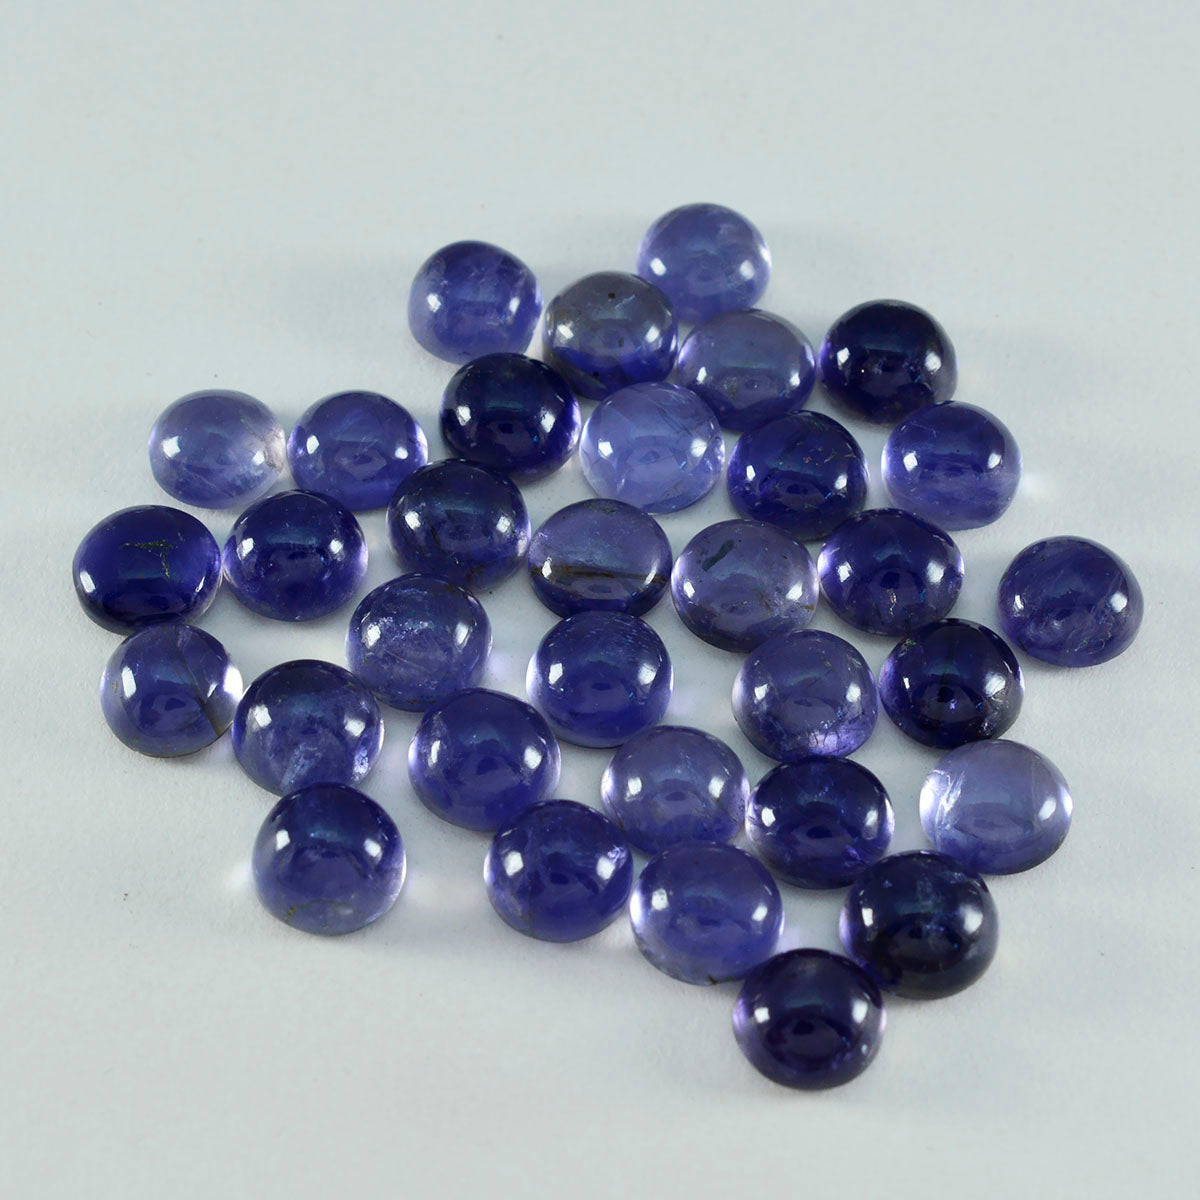 Riyogems 1 cabochon iolite bleu 8x8 mm forme ronde a + 1 pierres précieuses en vrac de qualité